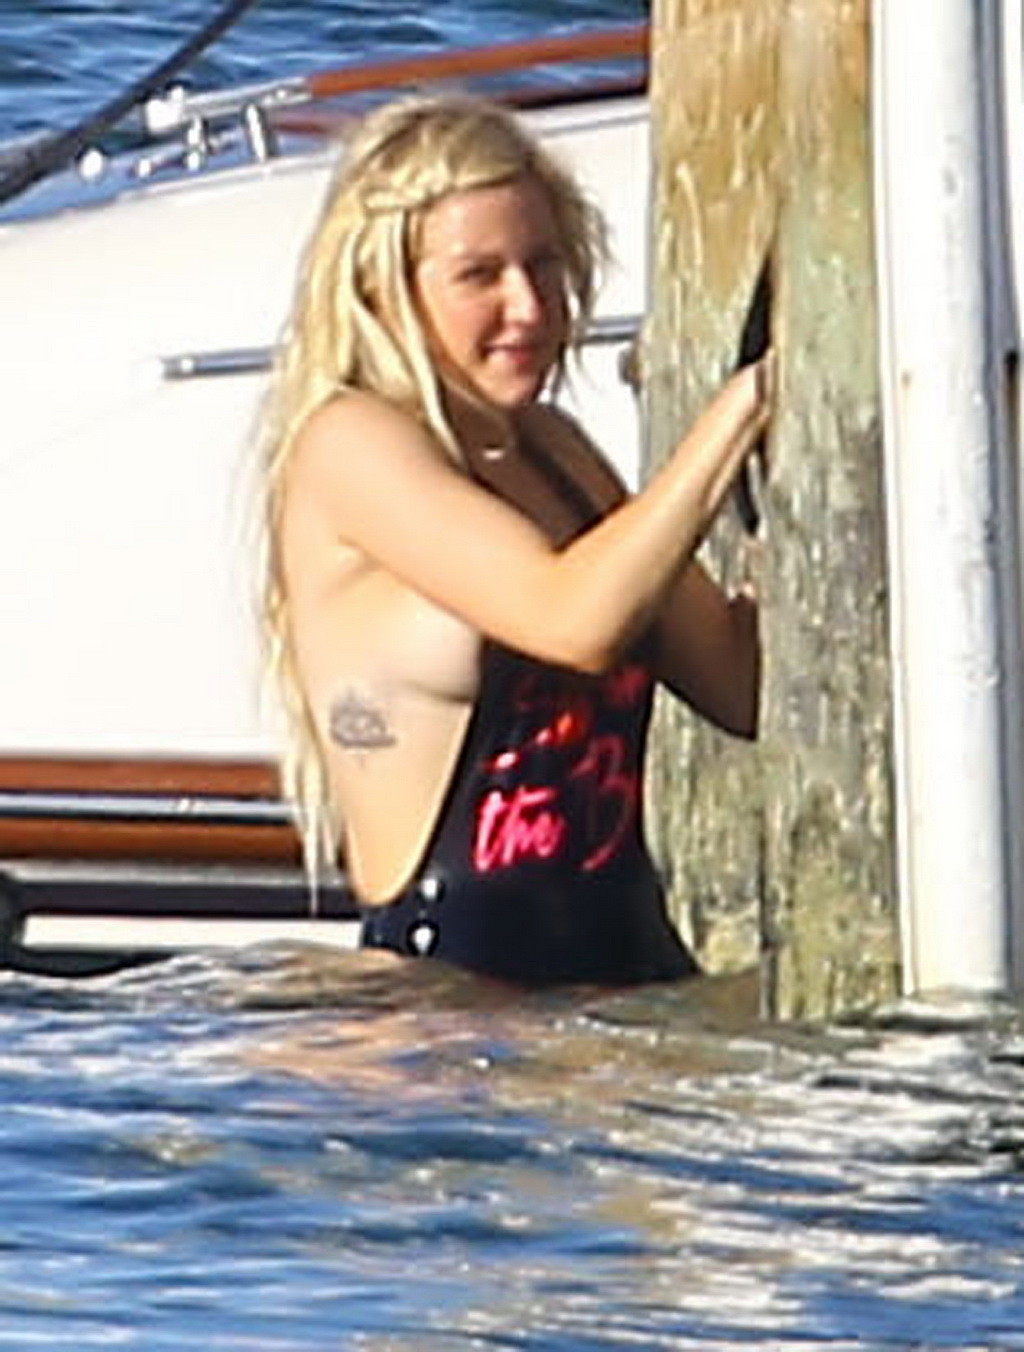 Ellie goulding boob slip in monokini nero durante una vacanza a miami beach
 #75197113